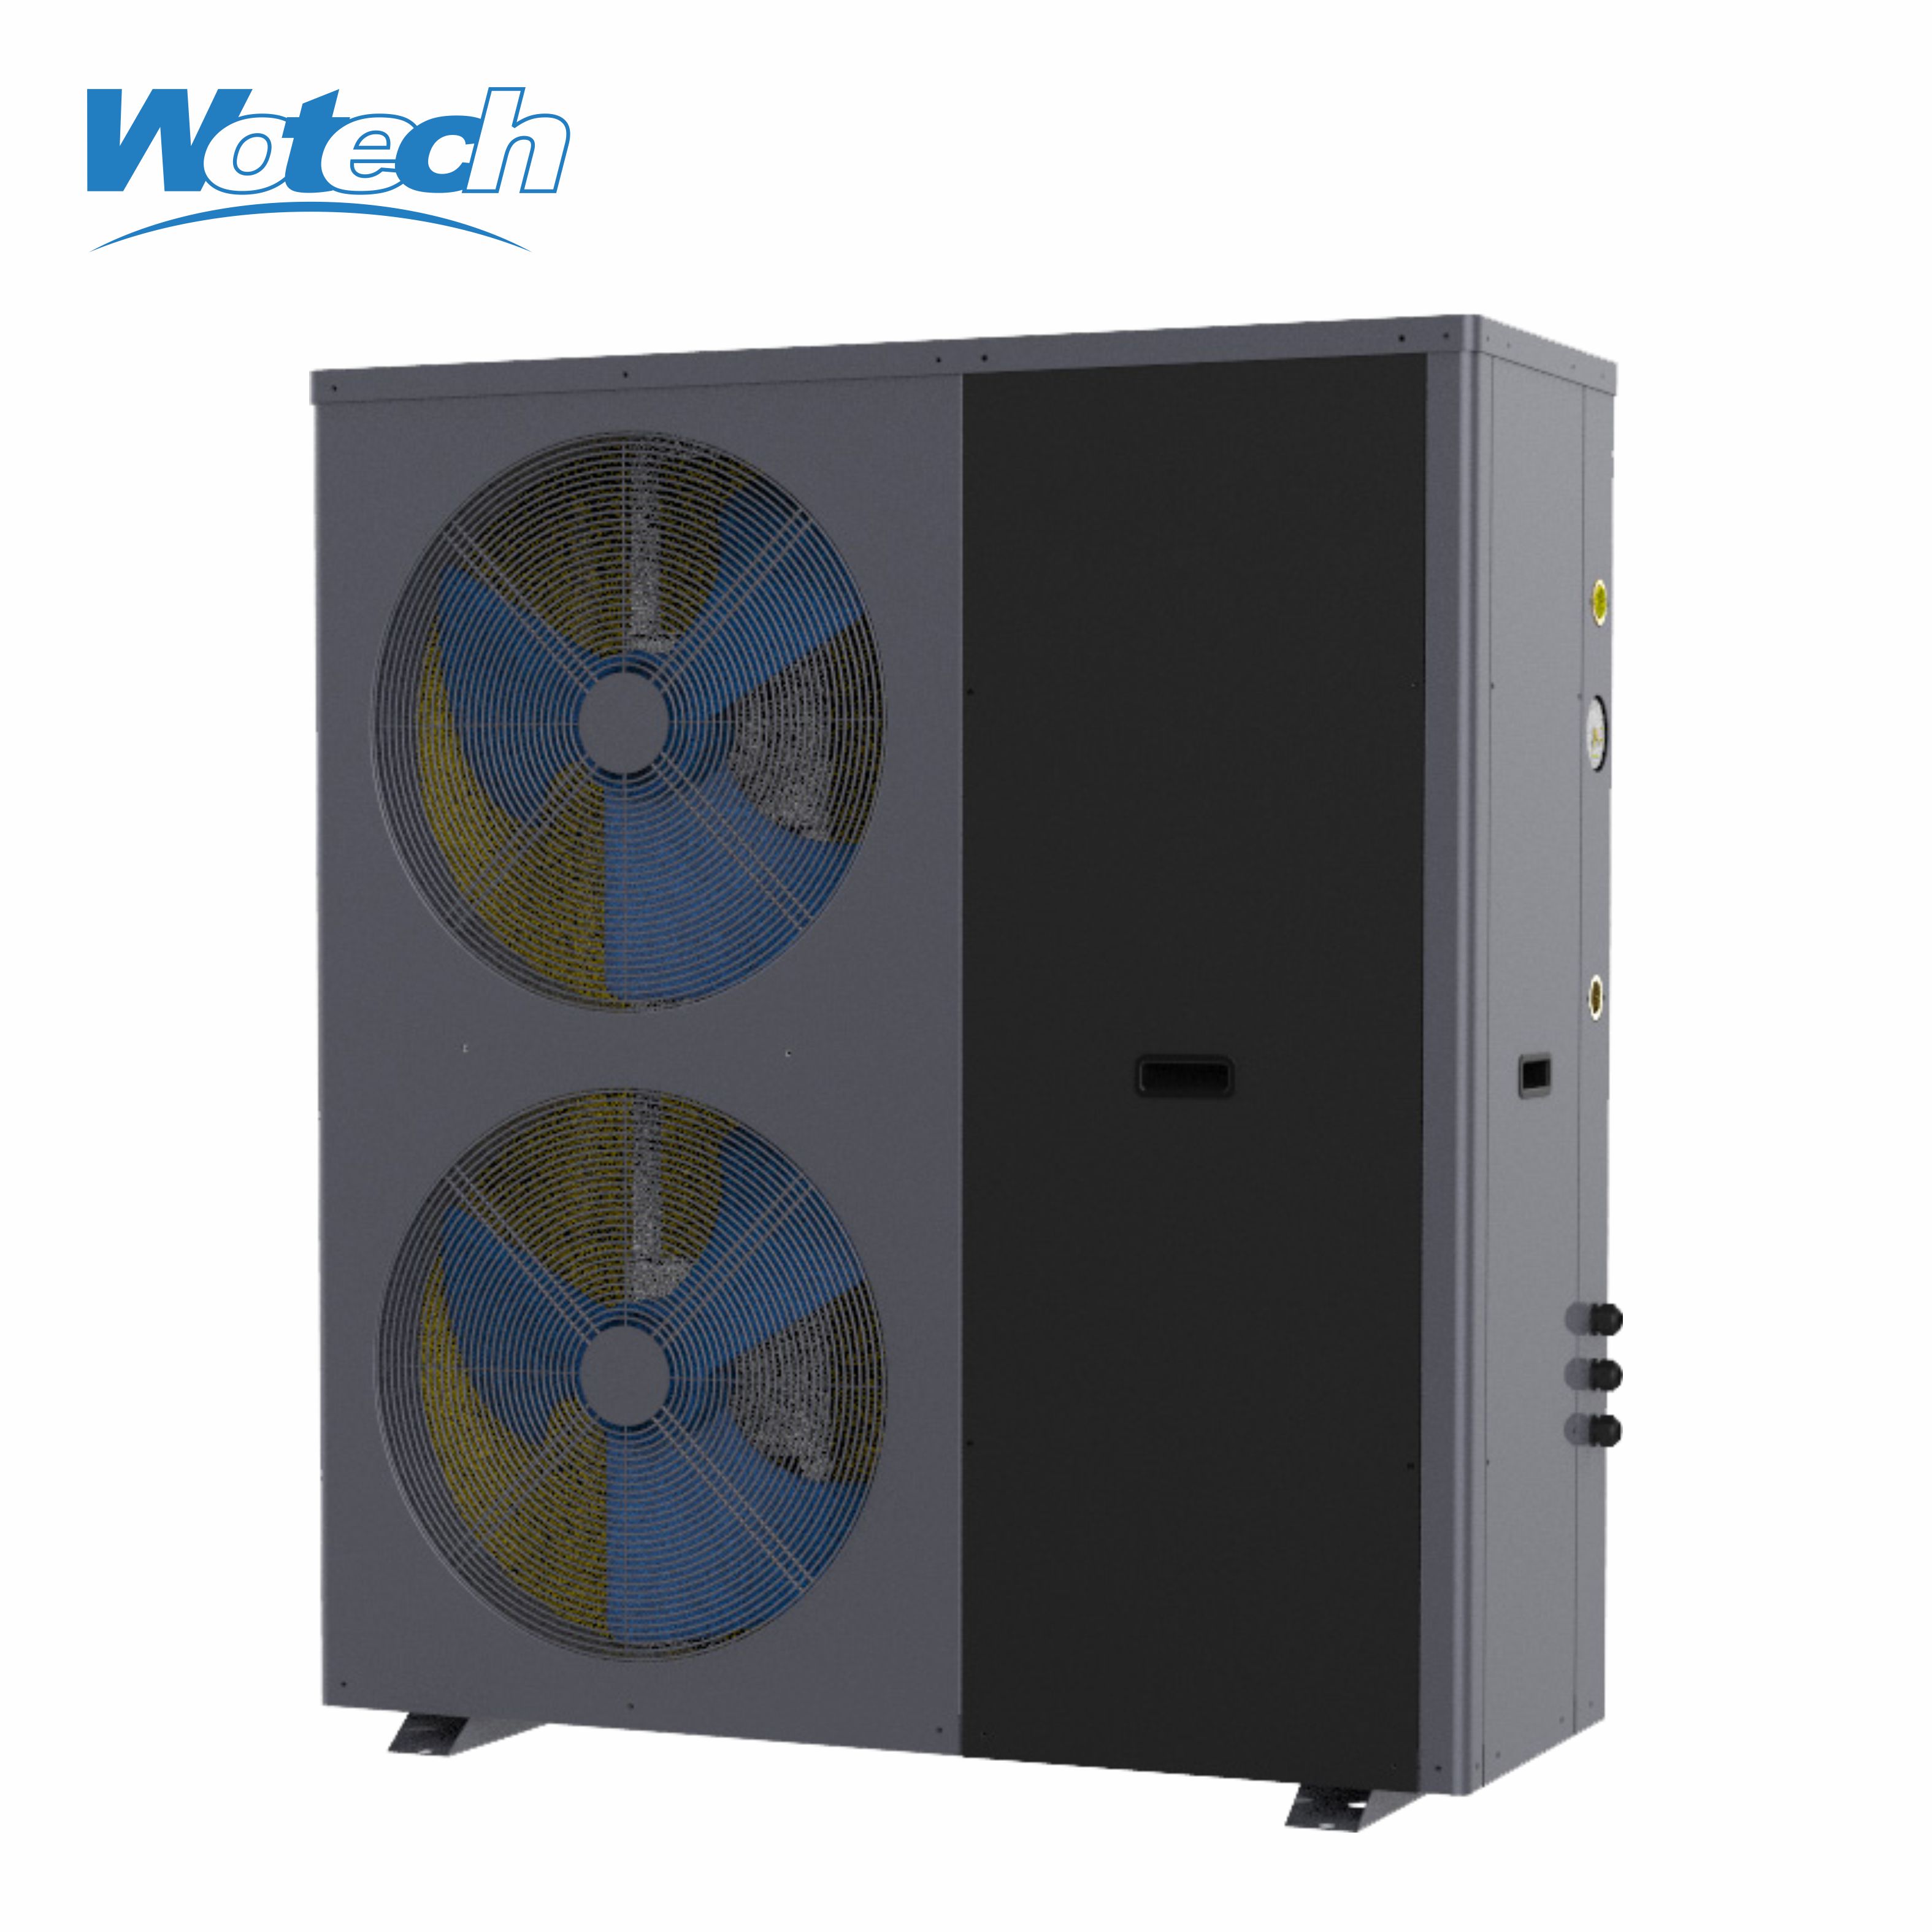 Hocheffiziente R32-Luftwärmepumpe mit fester Leistung und WLAN-Funktion